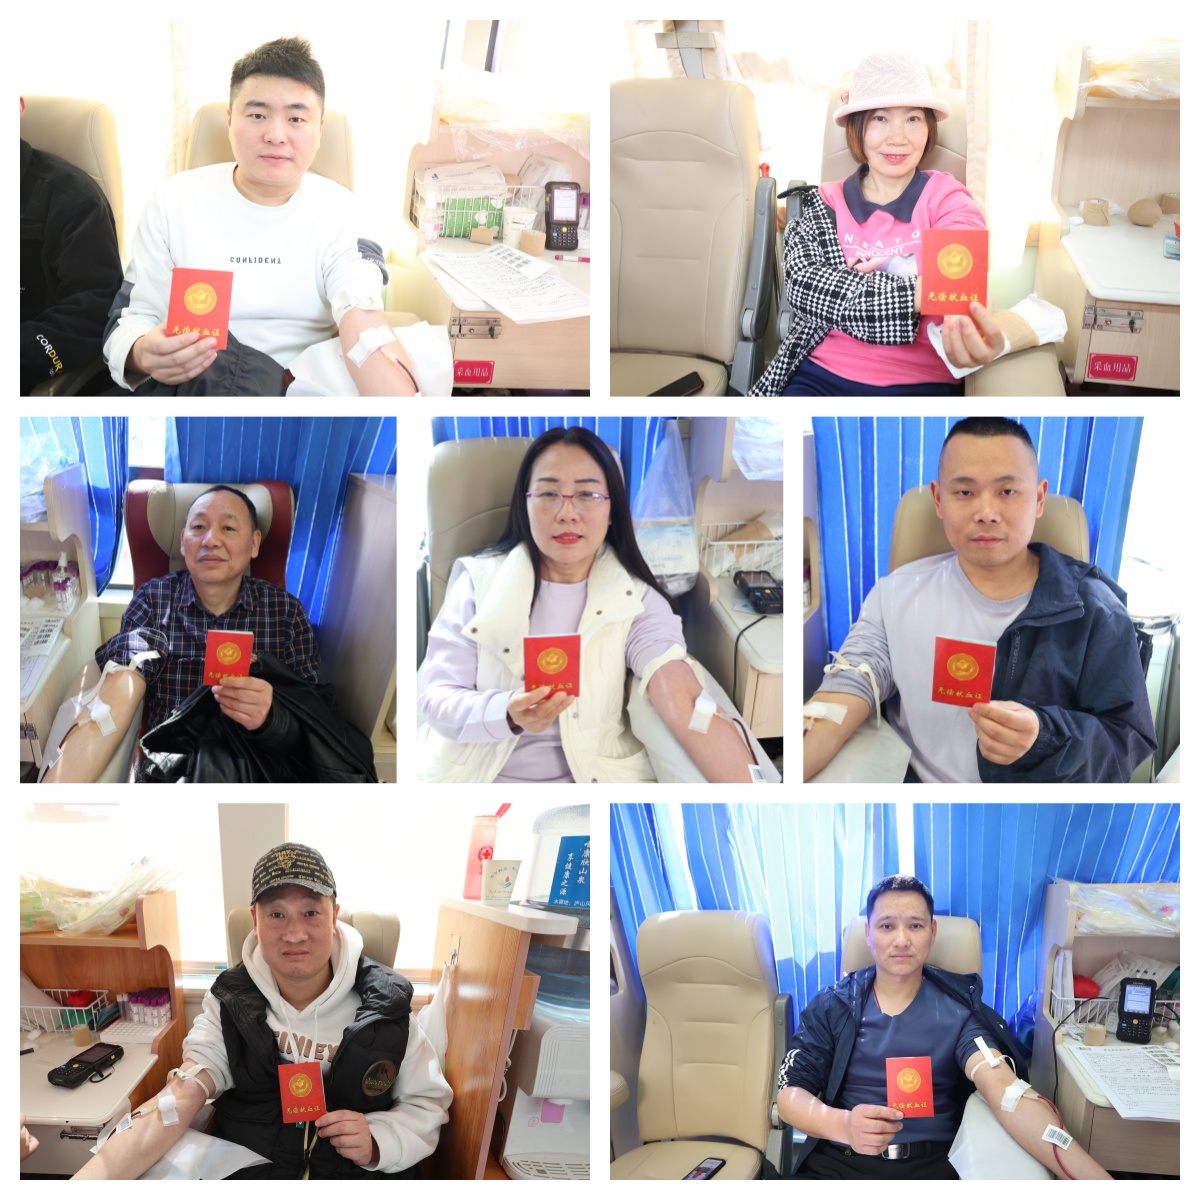 献出热血 传递爱心——浔阳区人民政府组织区直单位无偿献血活动